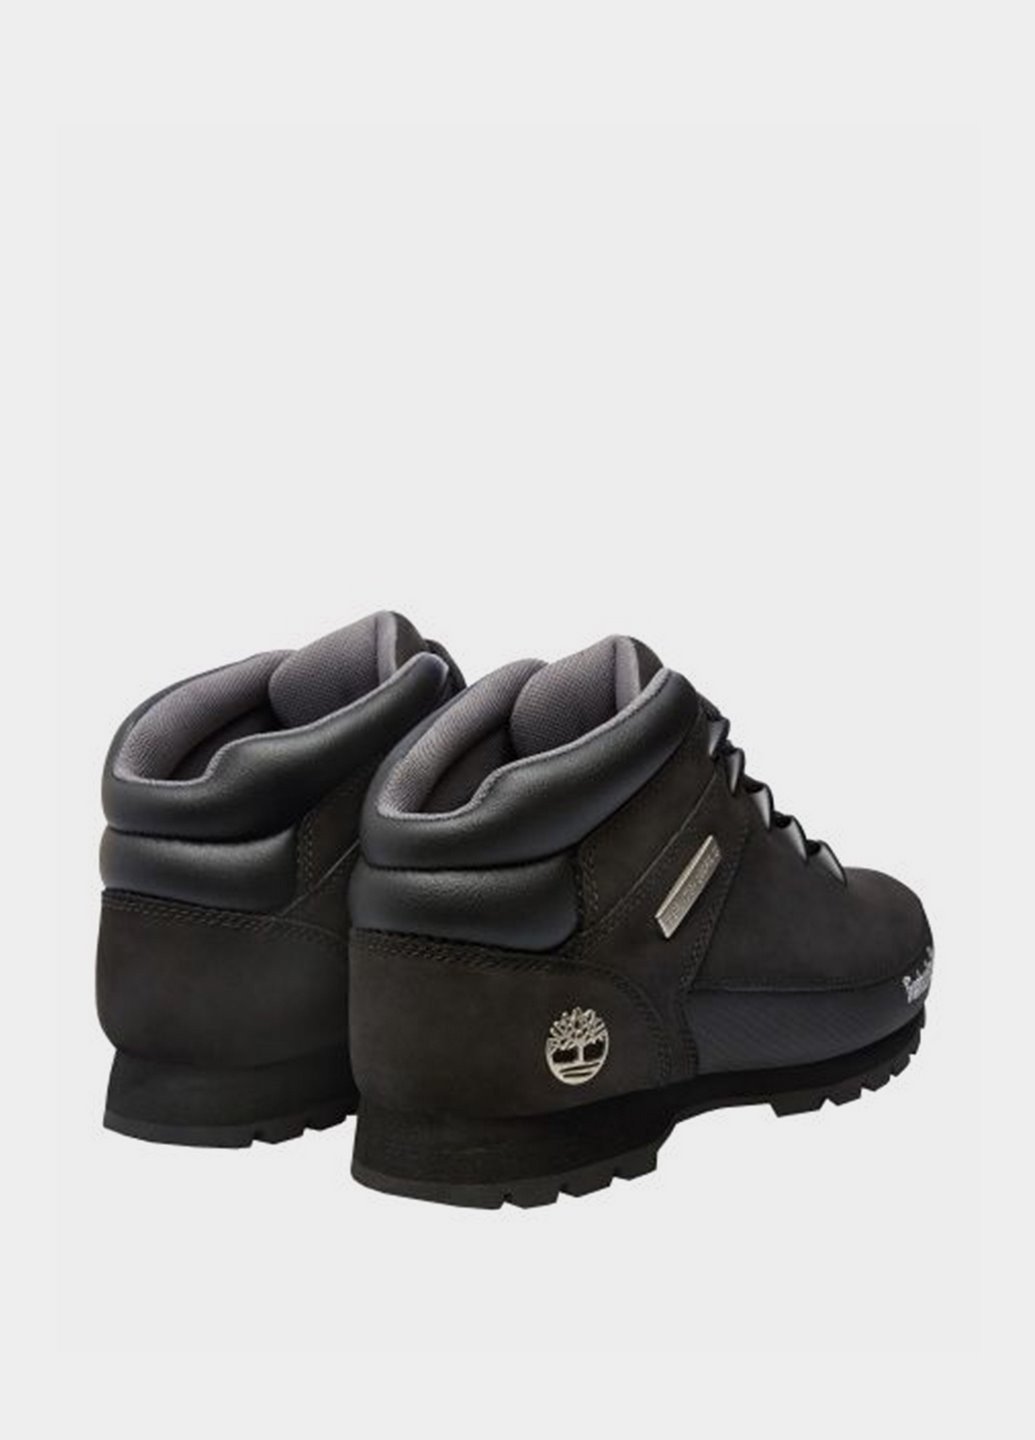 Черные зимние мужские ботинки euro sprint mid hiker tb06361r001 Timberland